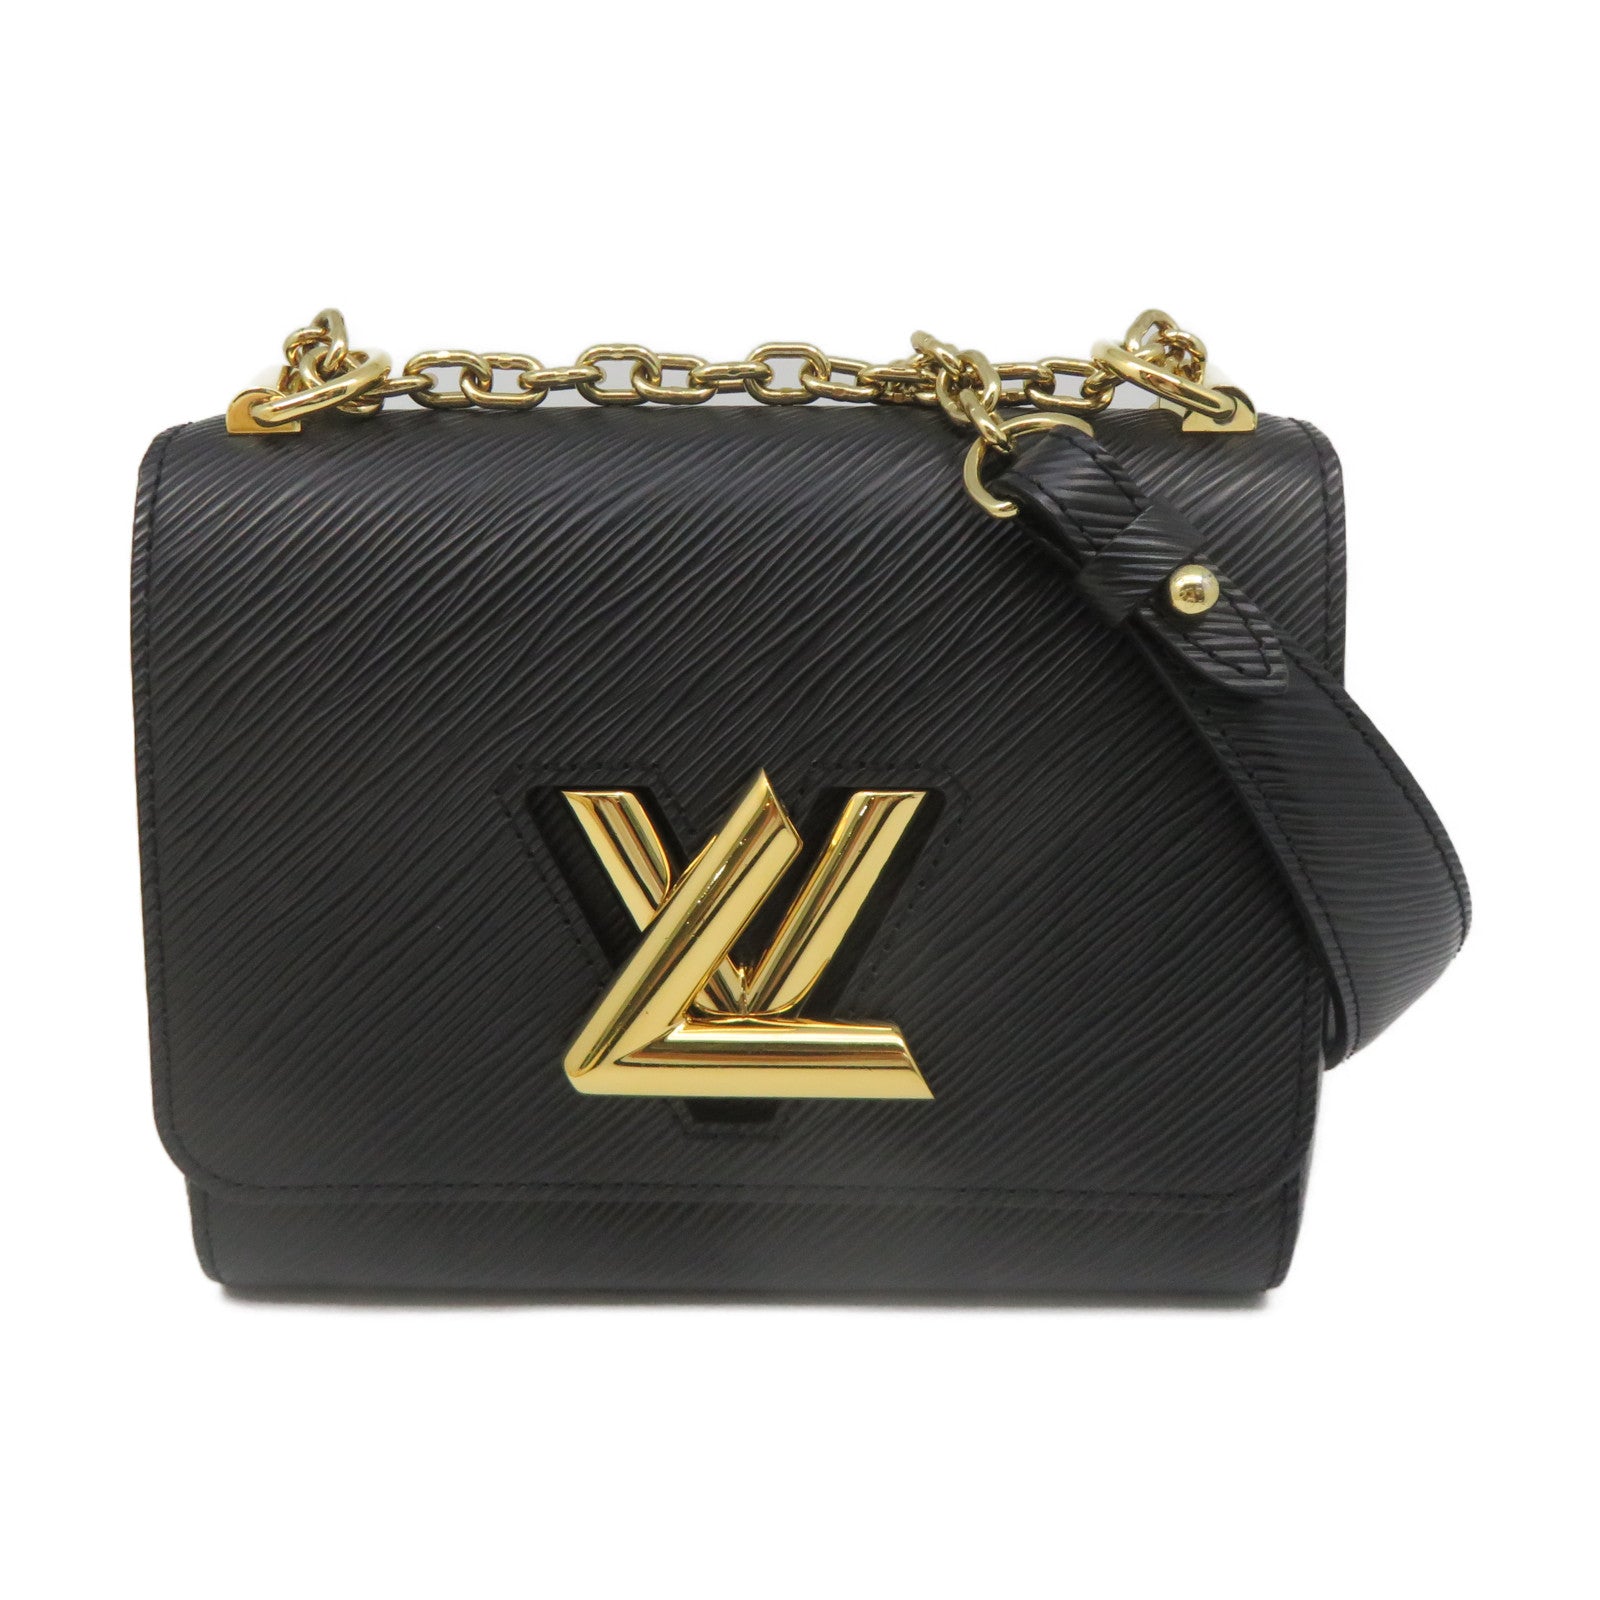 LOUIS VUITTON Epi Twist PM Gold Buckle Shoulder Bag Black – Brand